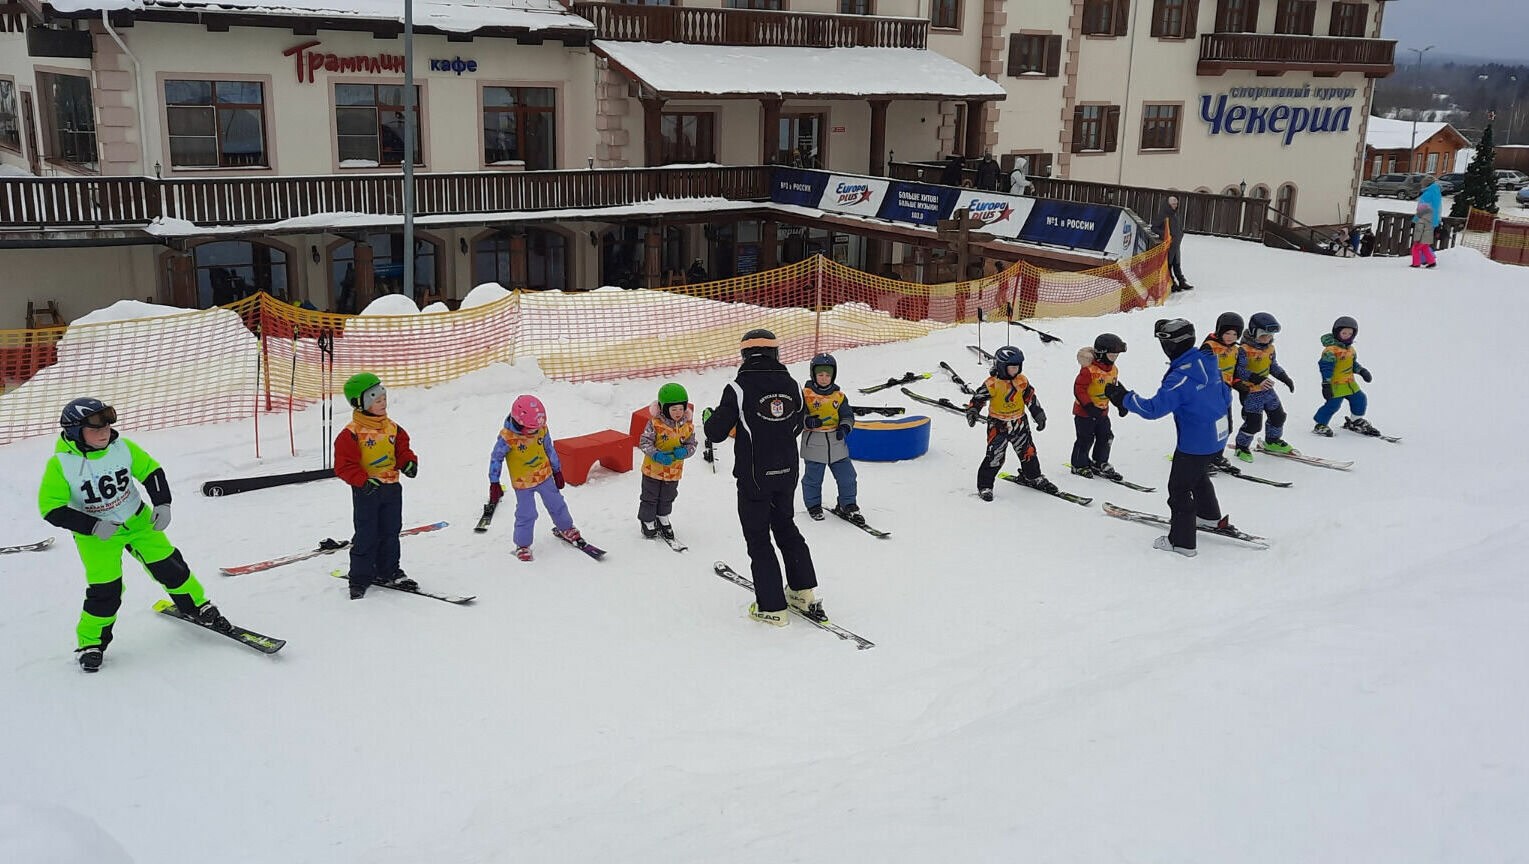 Ия Боронина: Помещение детской горнолыжной школы на СК «Чекерил» сдают под банкеты